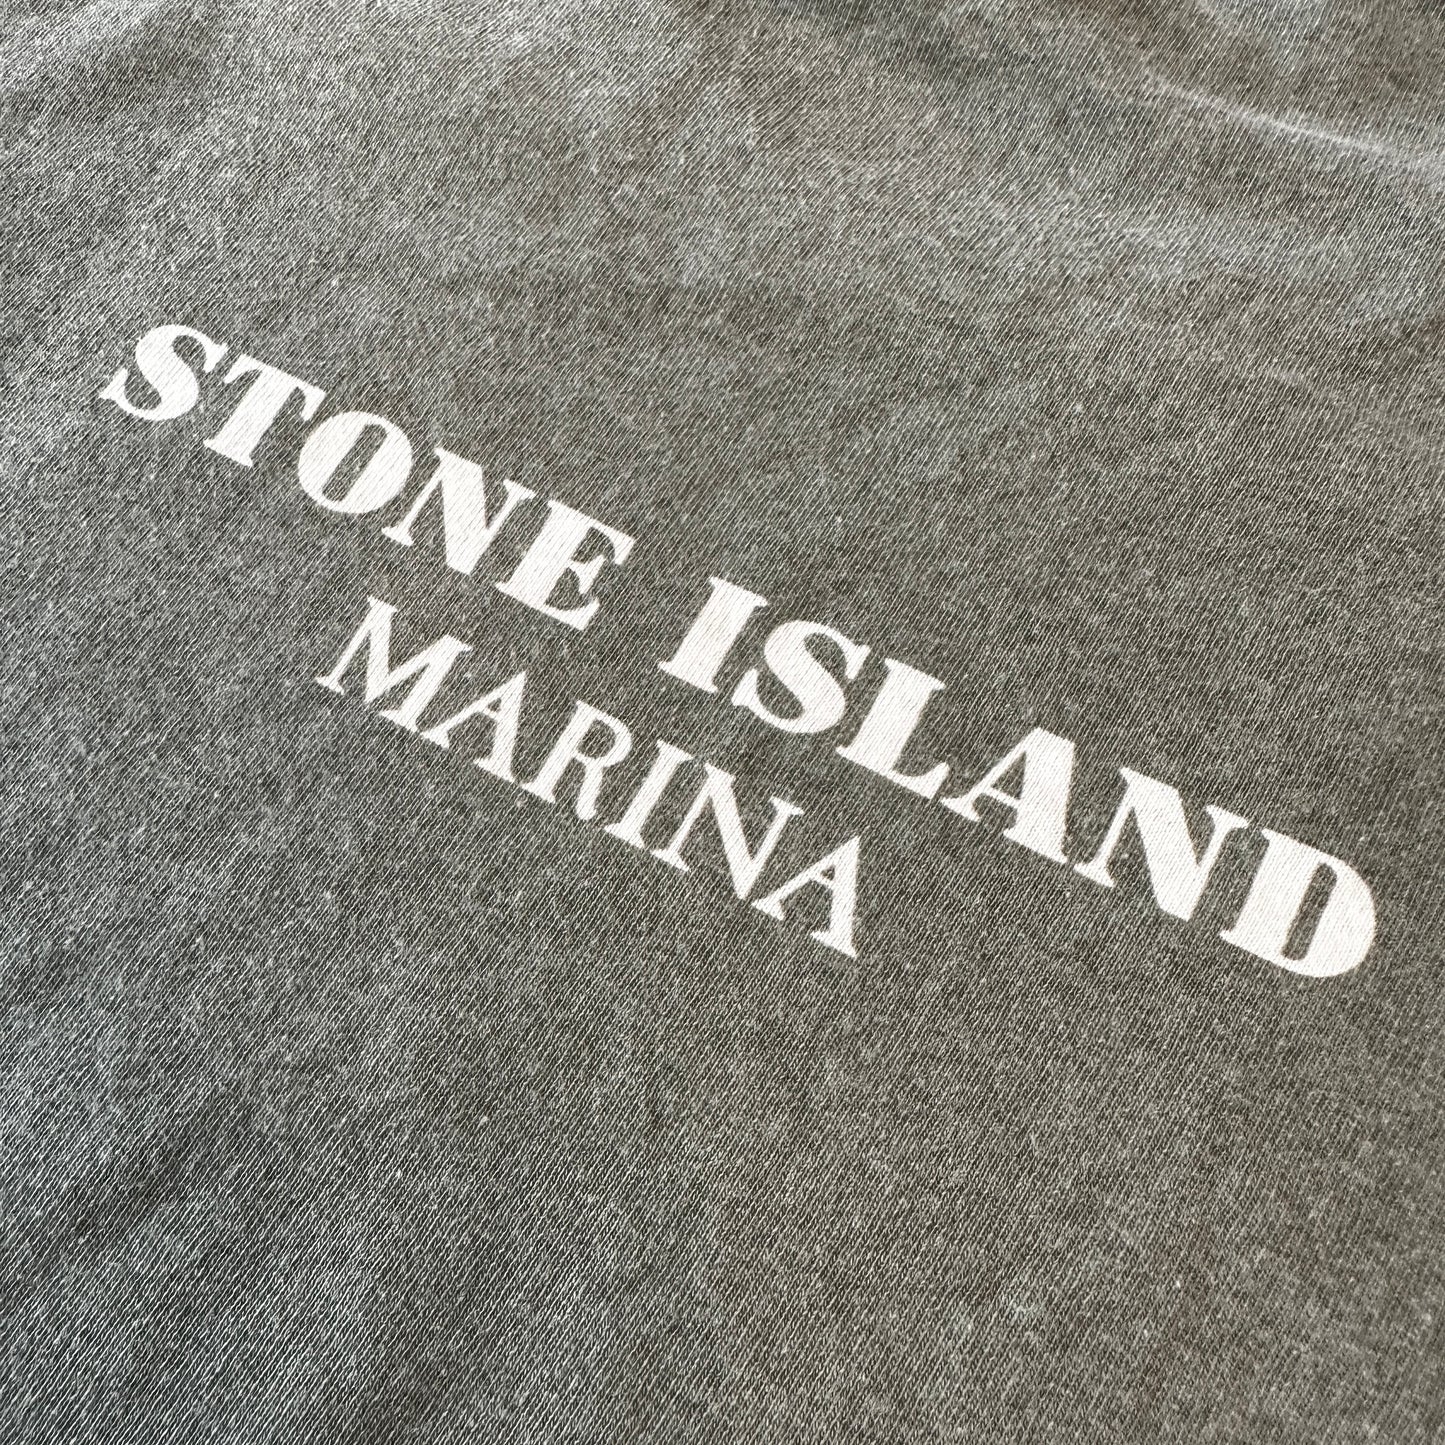 Stone Island Marina  T-Shirt - L - Made in Italy